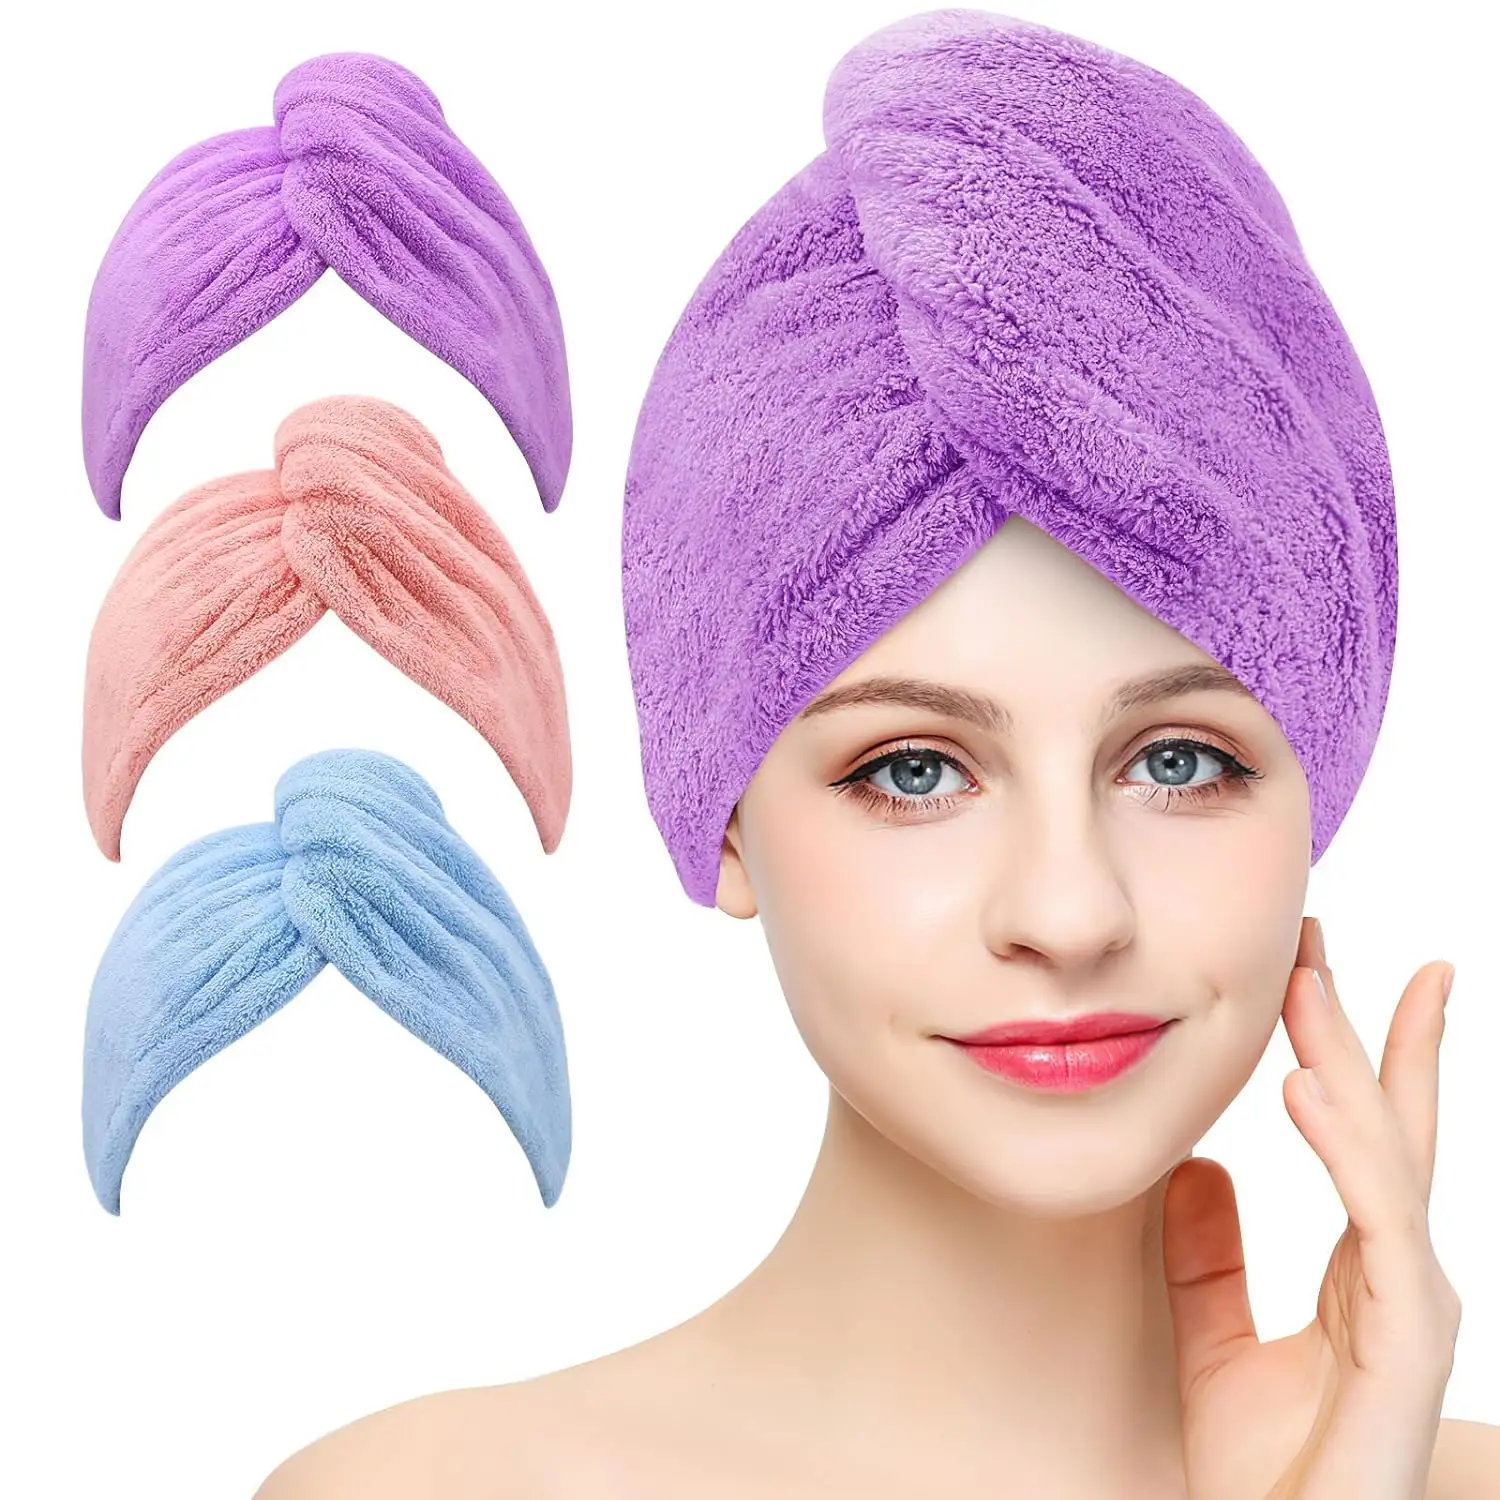 Serviette de cheveux en microfibre avec bouton enveloppes de cheveux à séchage rapide super absorbantes pour cheveux bouclés serviette en microfibre anti-frisottis pour femmes